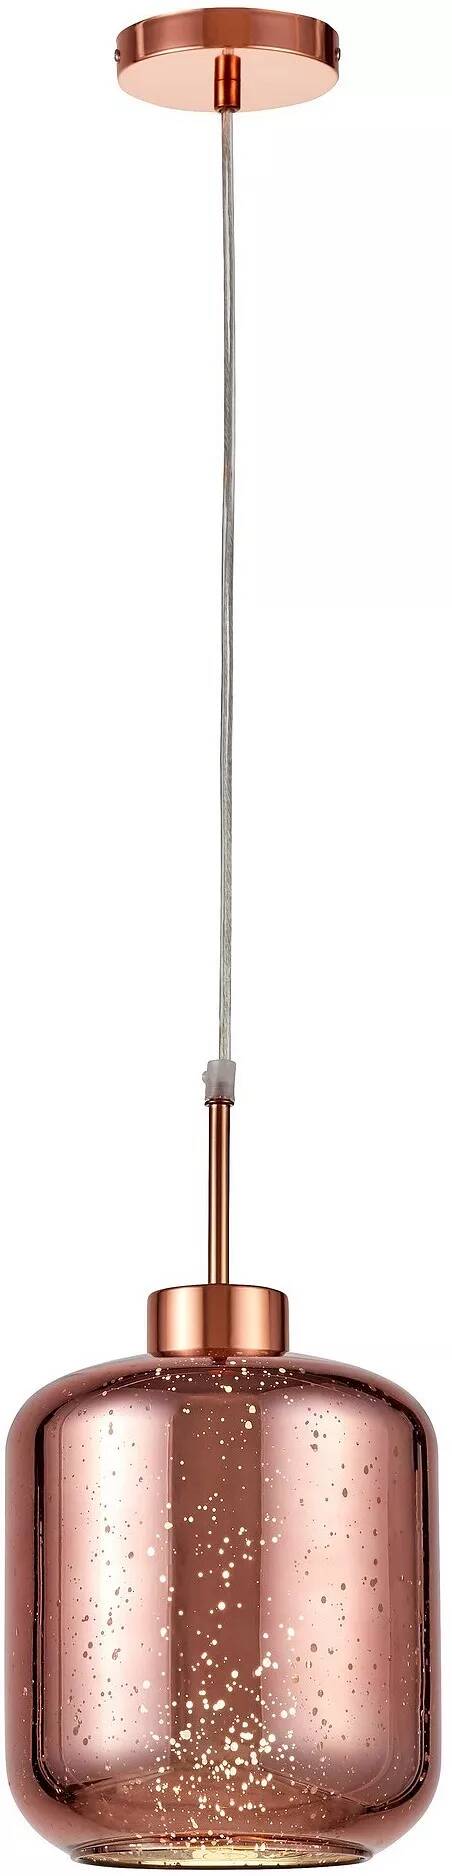 Lampe suspension en verre et métal or rose Ø18